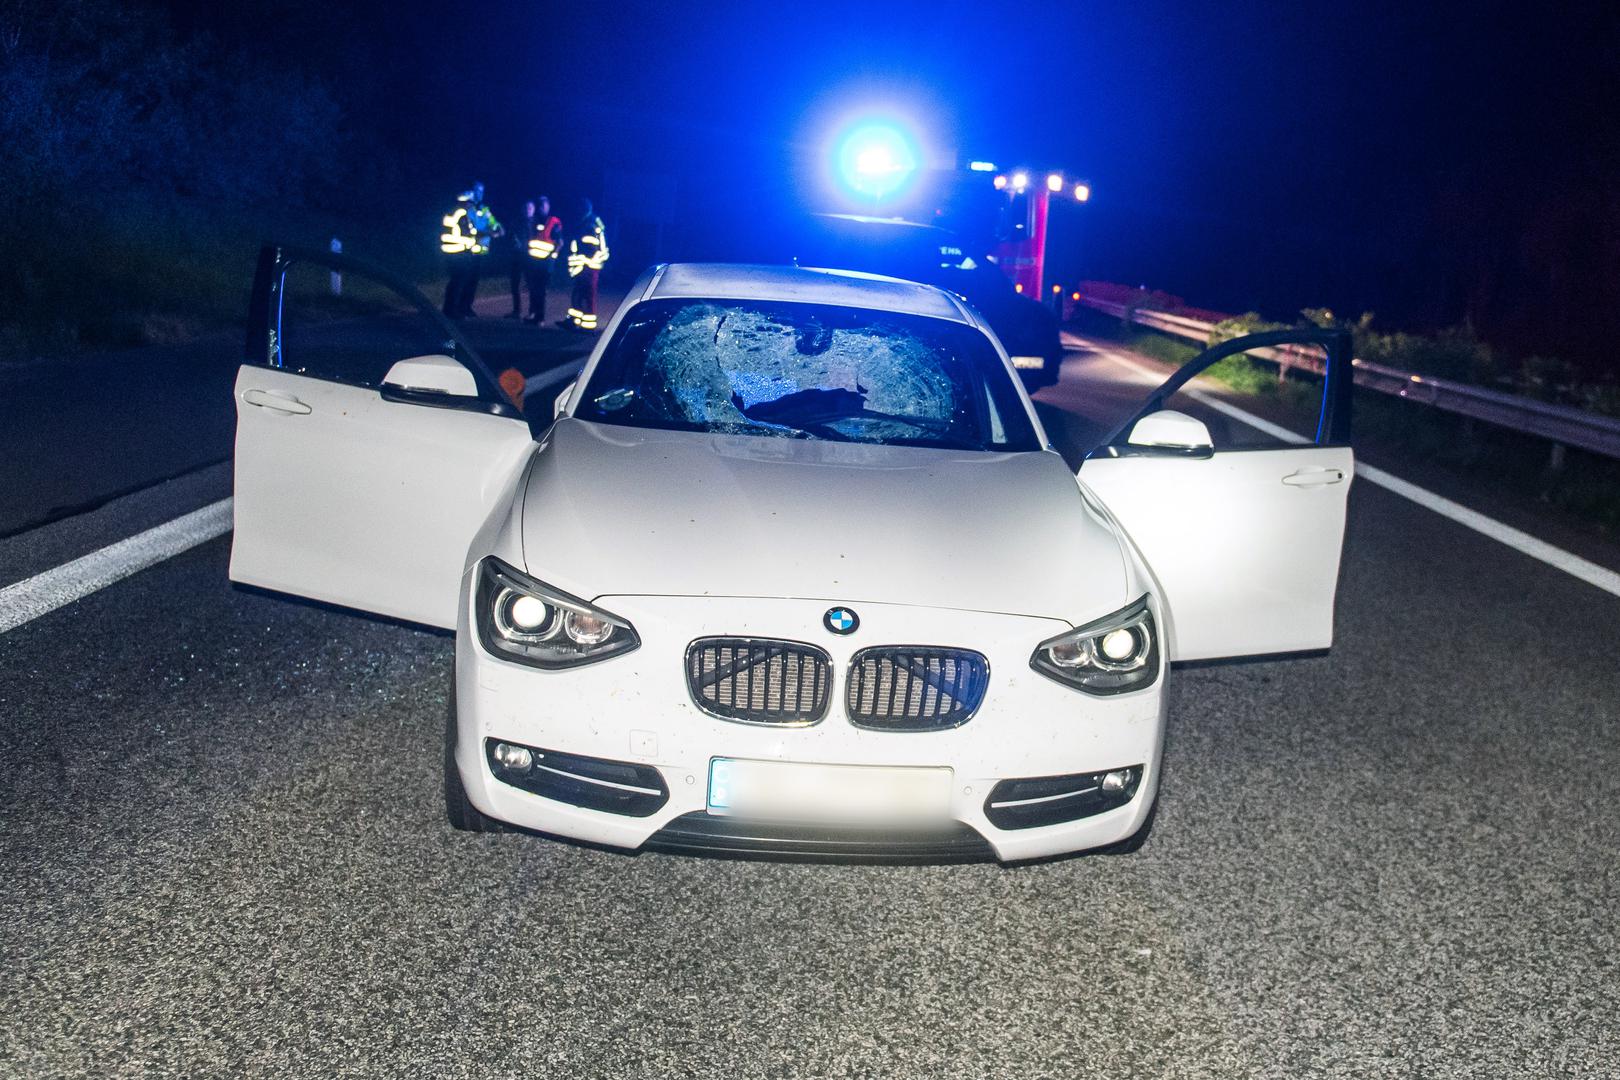 Nakon što je netko na njen automobil bacio kamen s mosta, vozačica BMW-a koja je vozila po njemačkoj autocesti na granici s Danskom završila je u bolnici s teškim ozljedama.